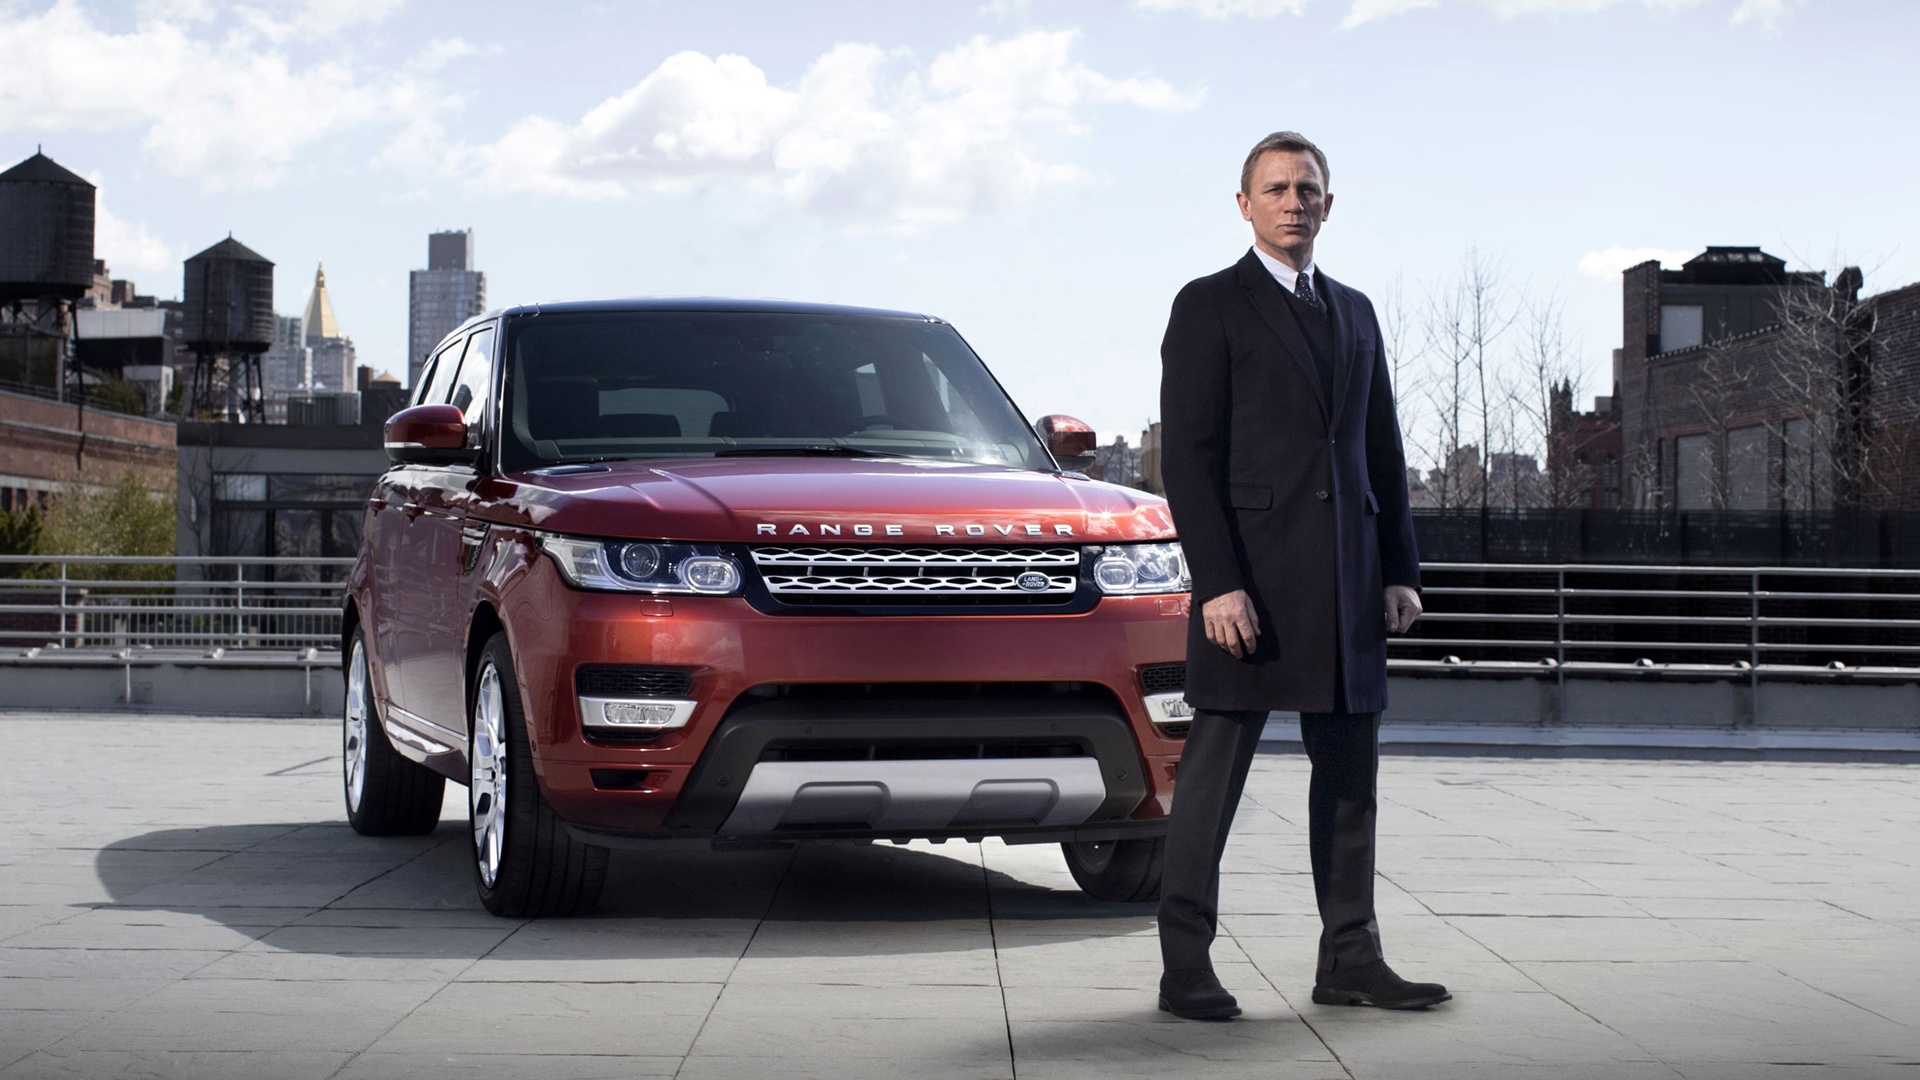 James Bond Range Rover Sport Wallpaper